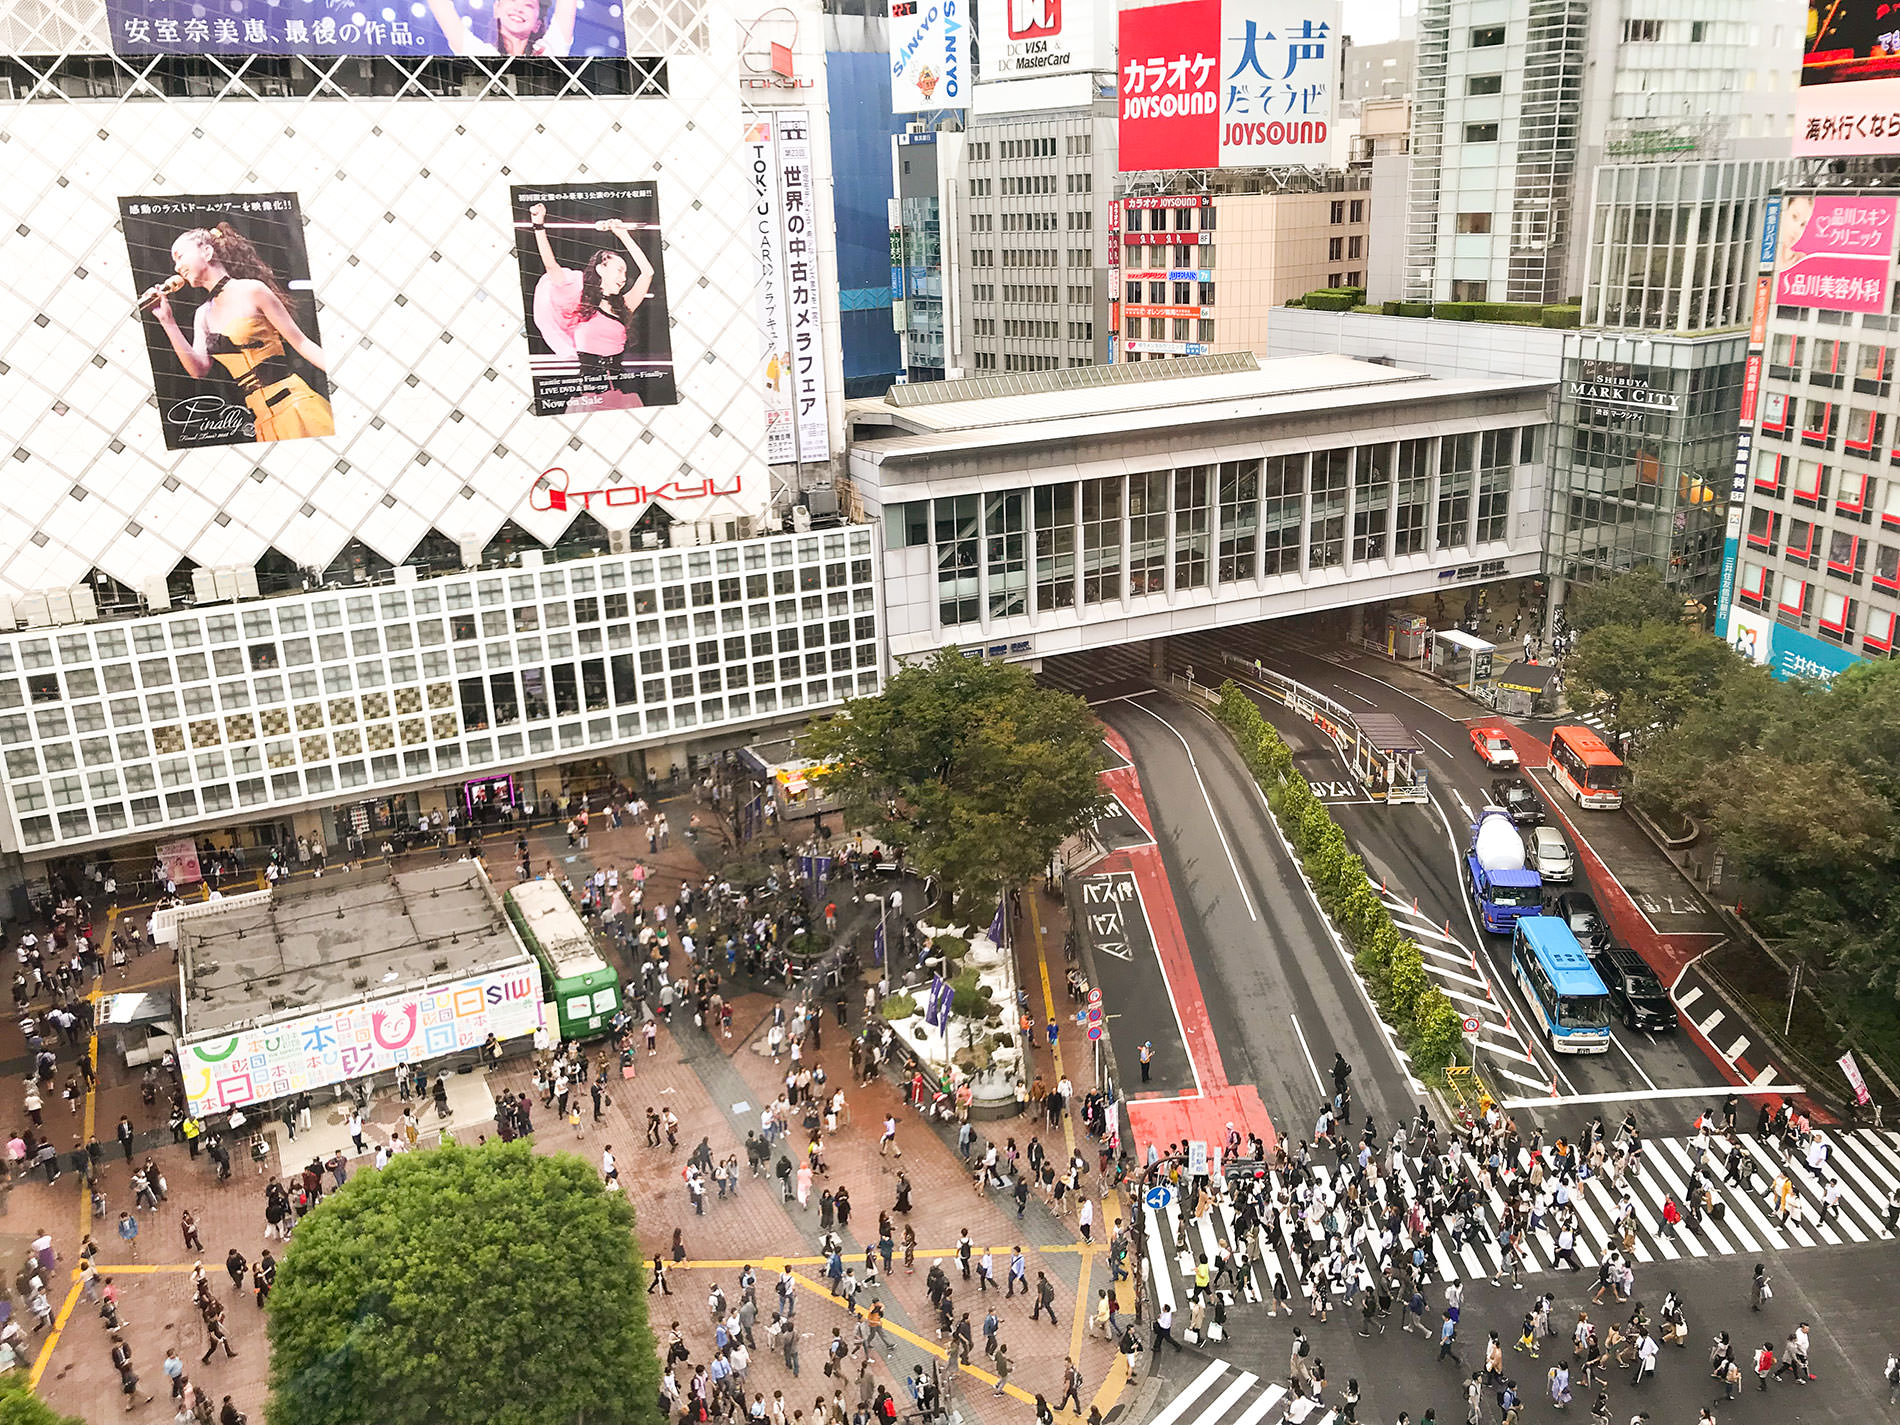 東急東横店解体 / 渋谷駅前再開発 / 2022年夏 // Demolition of Tokyu Toyoko Store / Redevelopment in front of Shibuya Station / Summer 2022